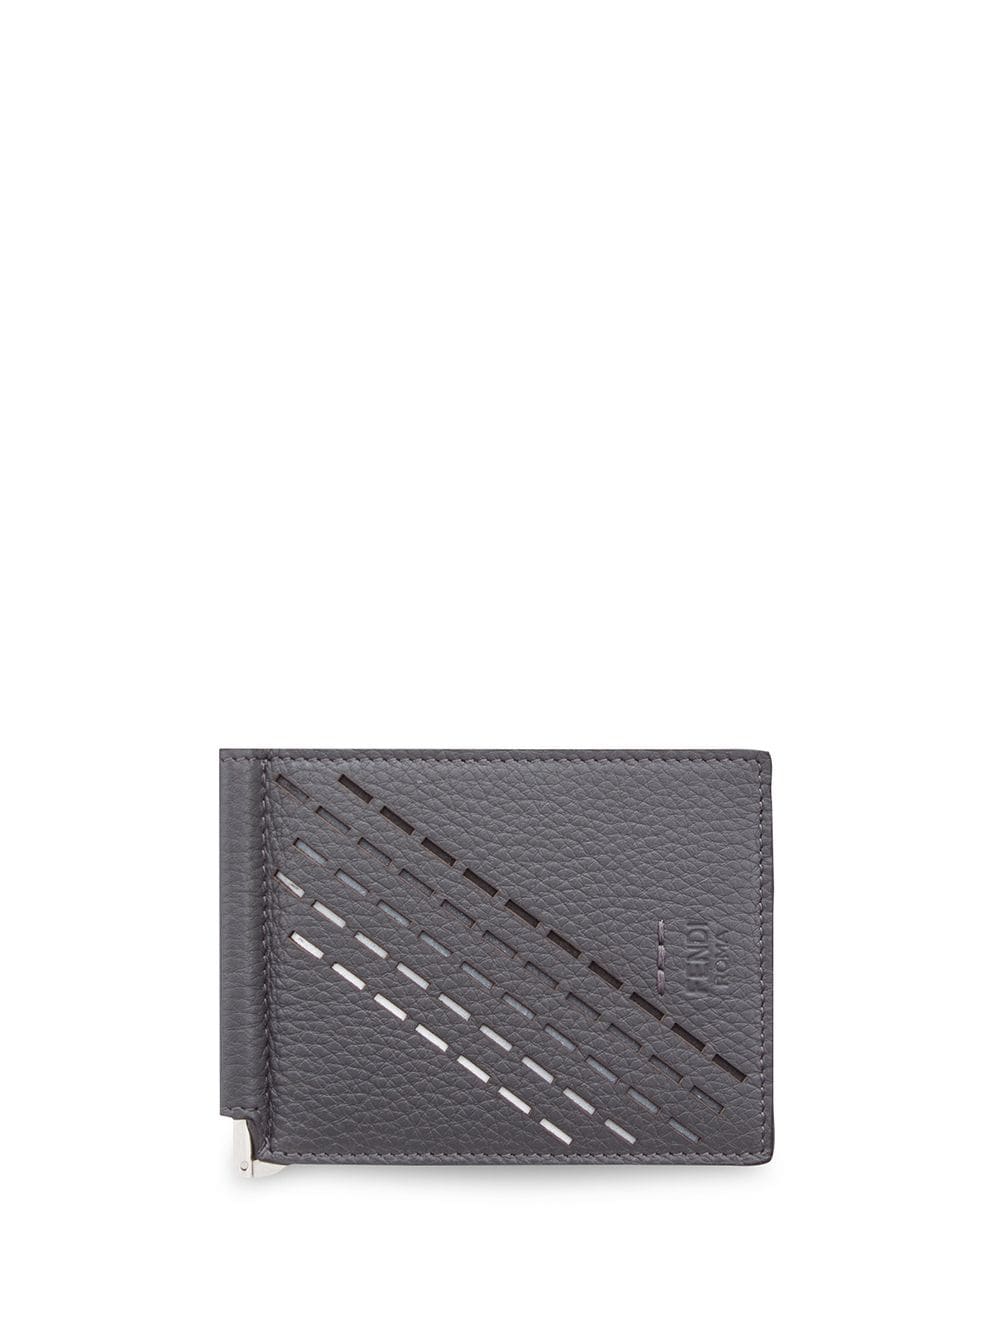 фото Fendi кошелек с зажимом для банкнот